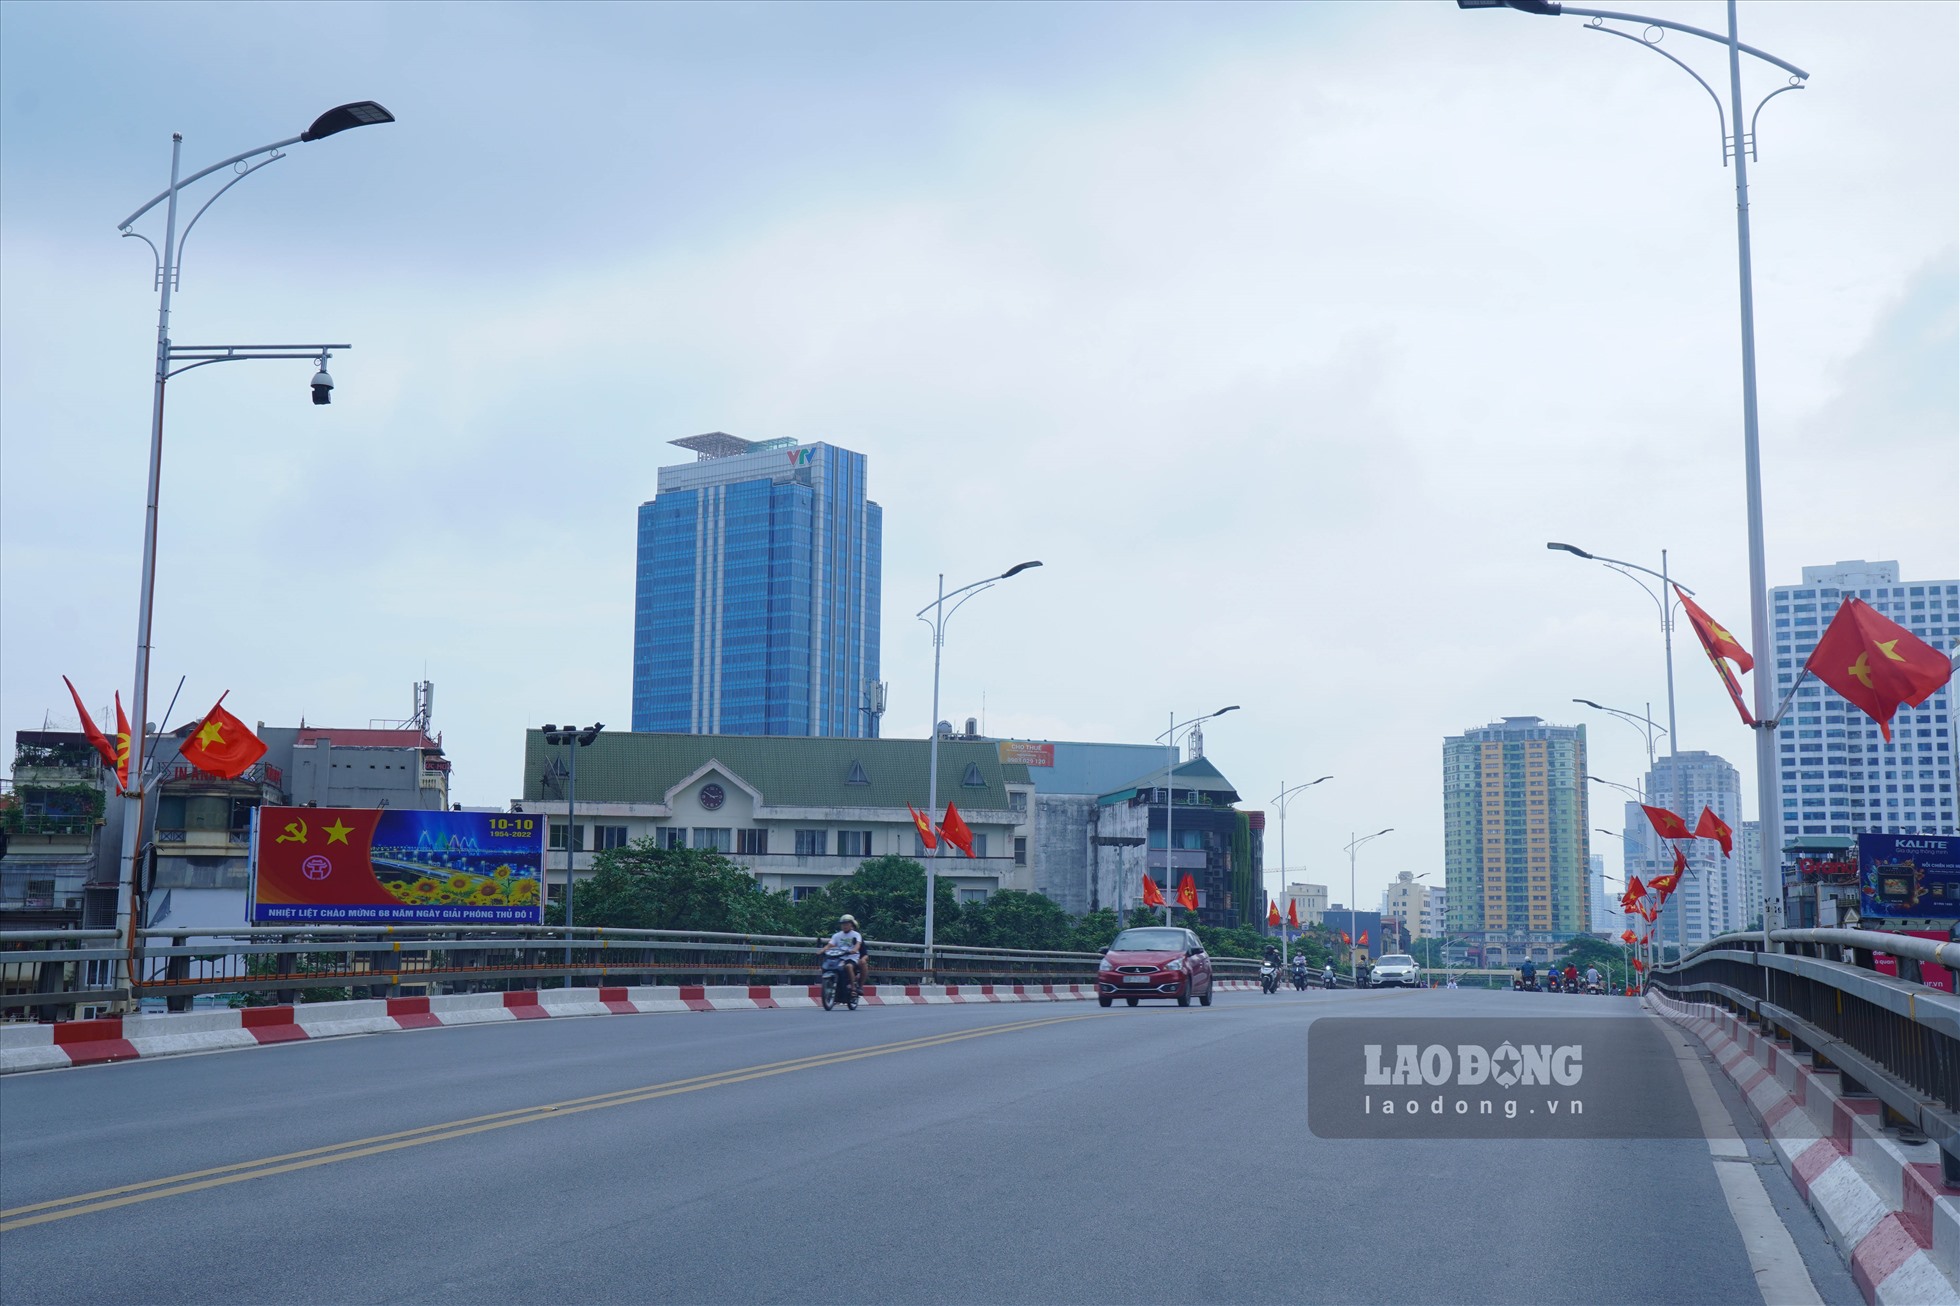 Cầu vượt Liễu Giai - Nguyễn Chí Thanh rực rỡ chào mừng ngày 10.10.